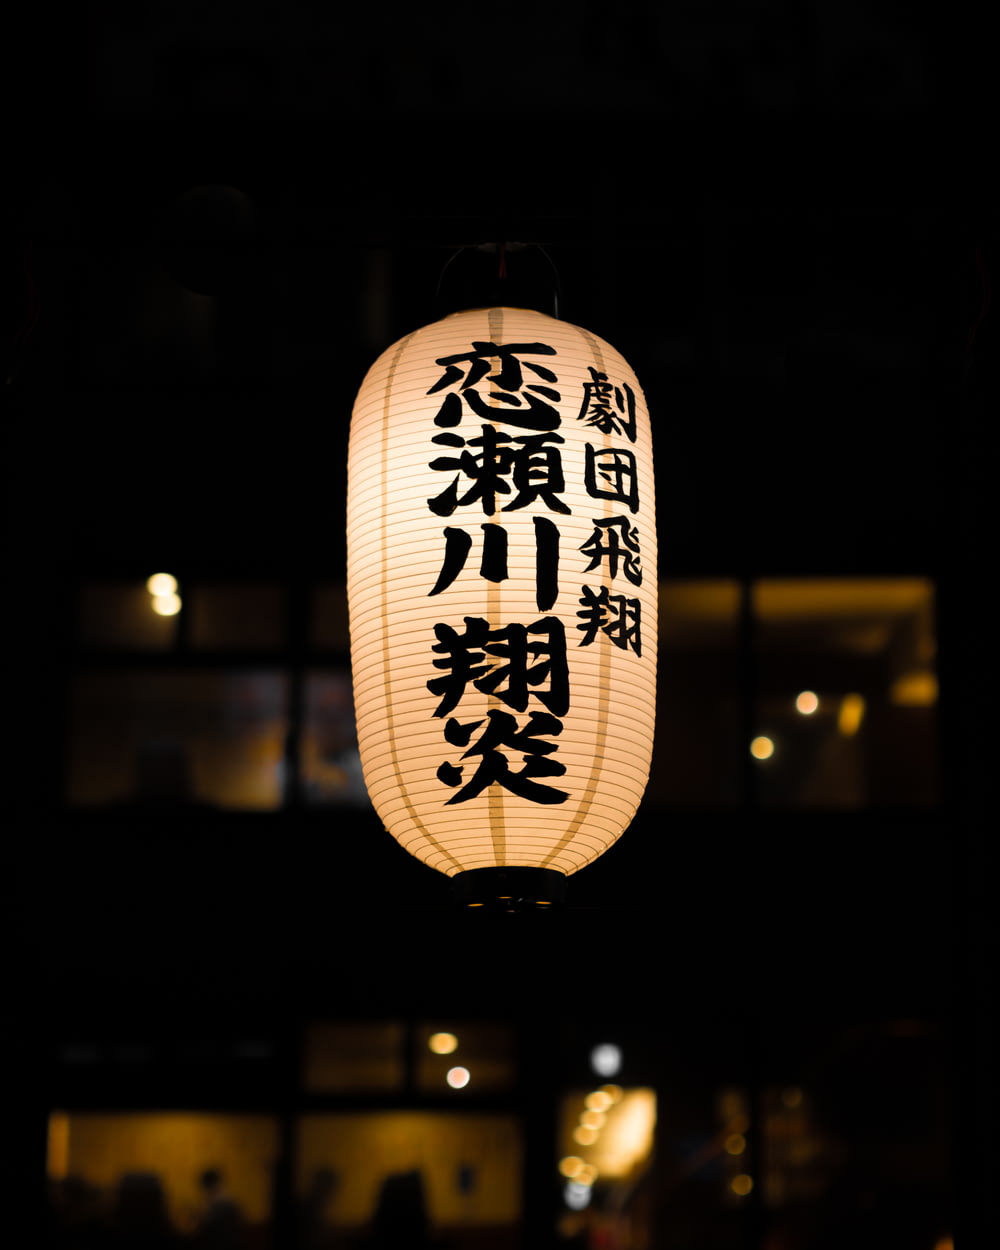 lampe suspendue allumée avec texte dans une langue autre que l’anglais